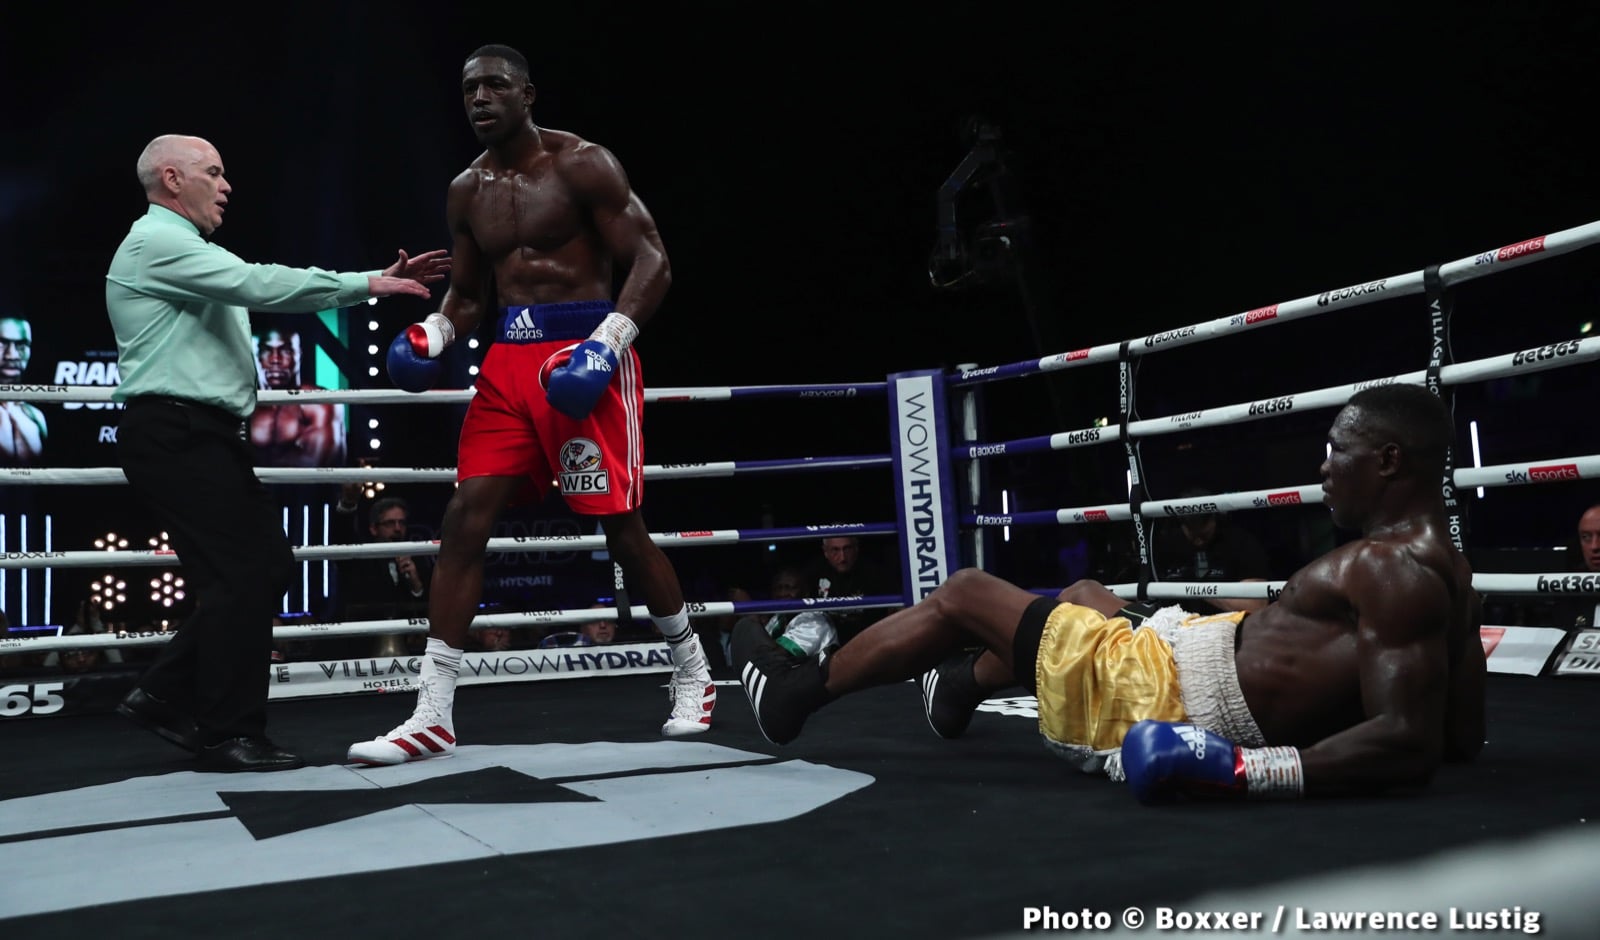 Olanrewaju Durodola boxing image / photo